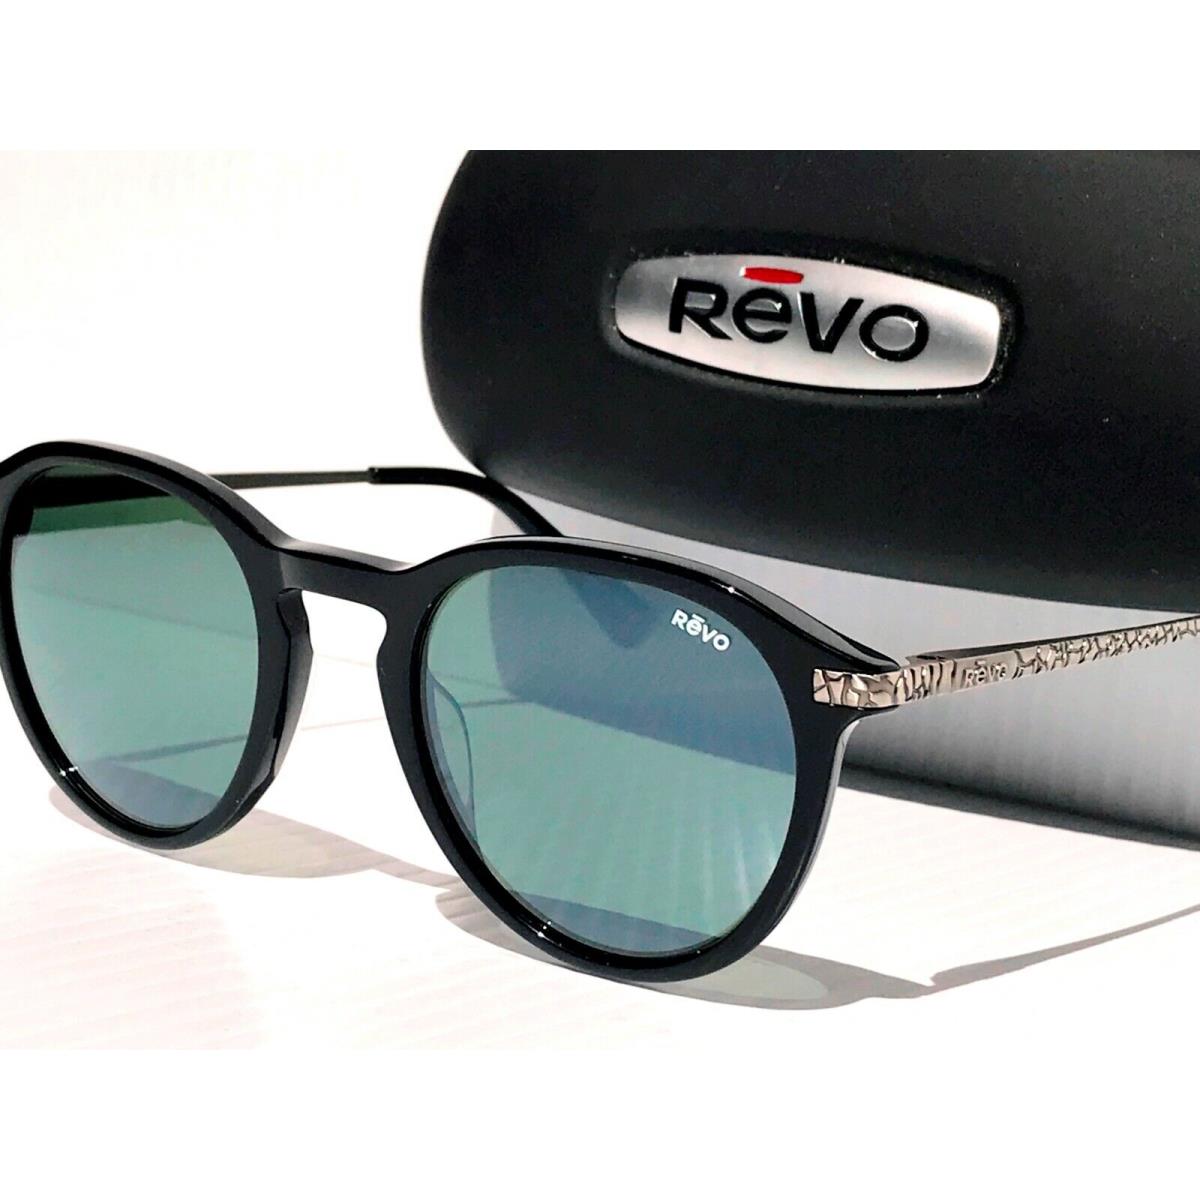 Revo sunglasses PYTHON - Black Frame, Gray Lens 3